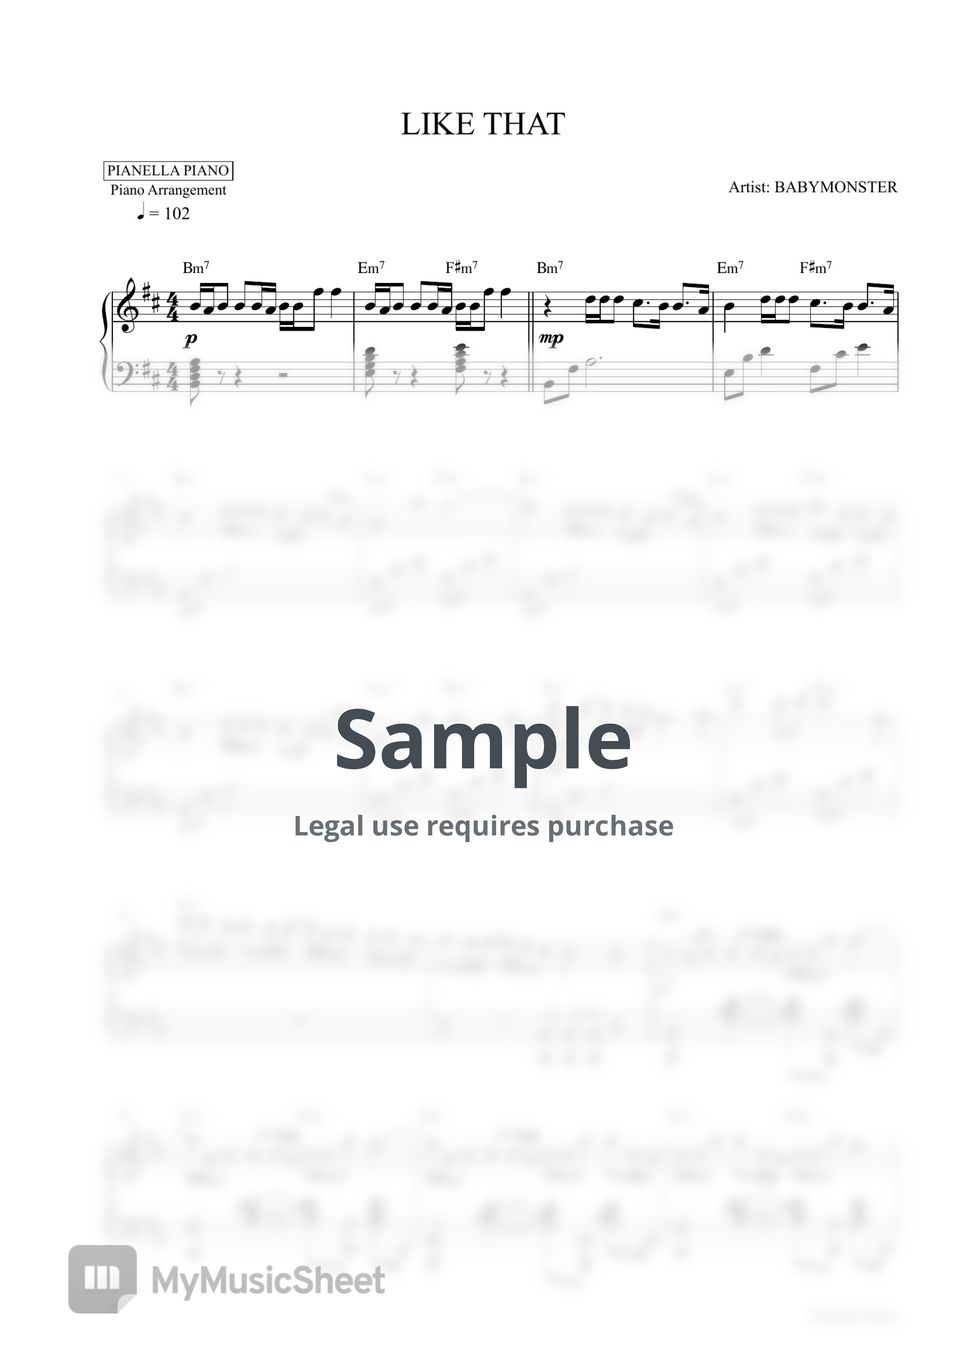 BABYMONSTER - LIKE THAT (Piano Sheet) by Pianella Piano